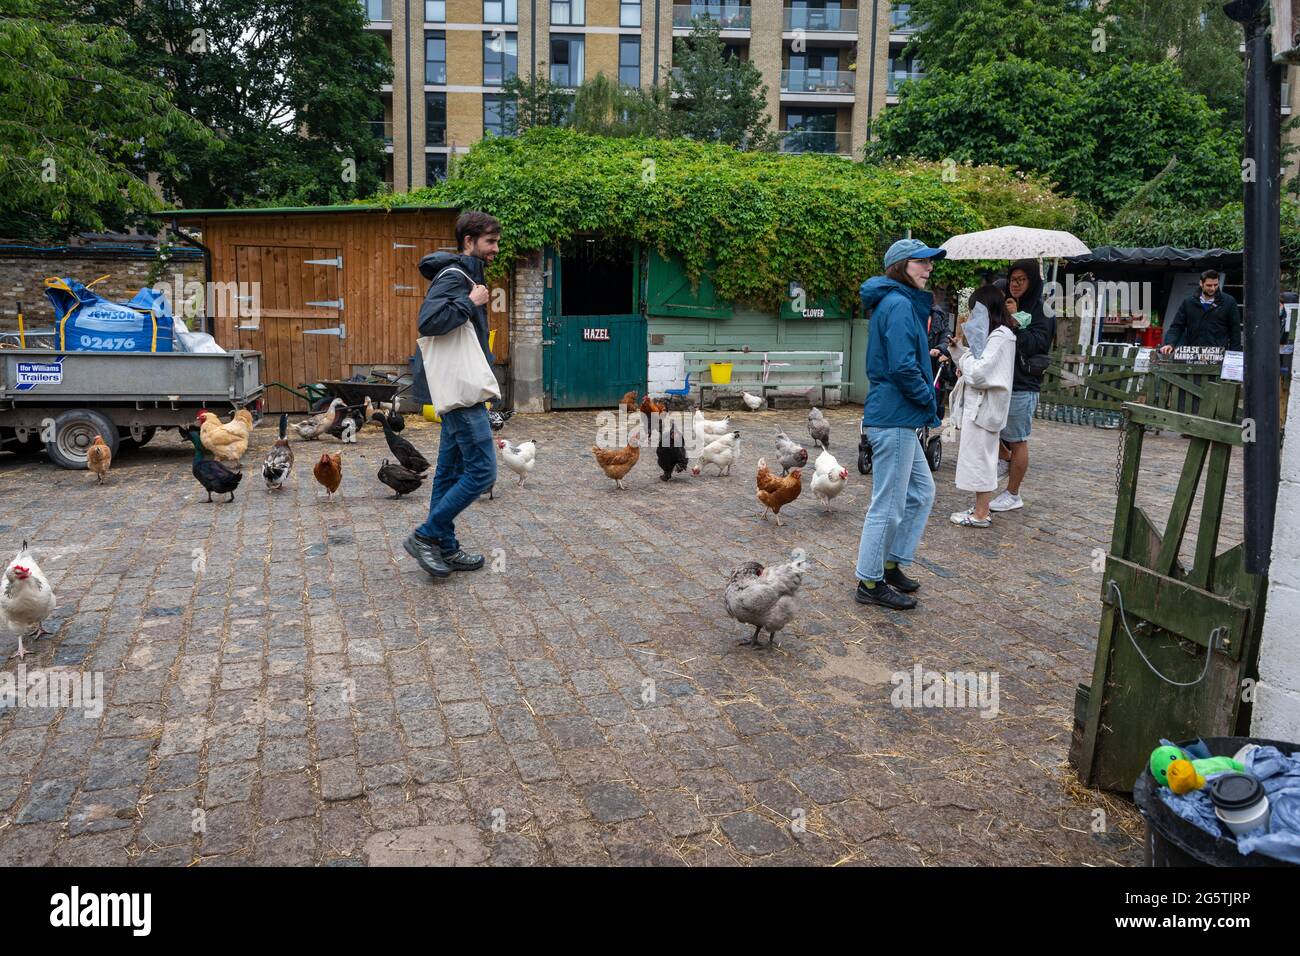 Londres. Reino Unido- 06.27.2021: Visitantes que interactúan con animales en la granja de Hackney City Farm. Foto de stock